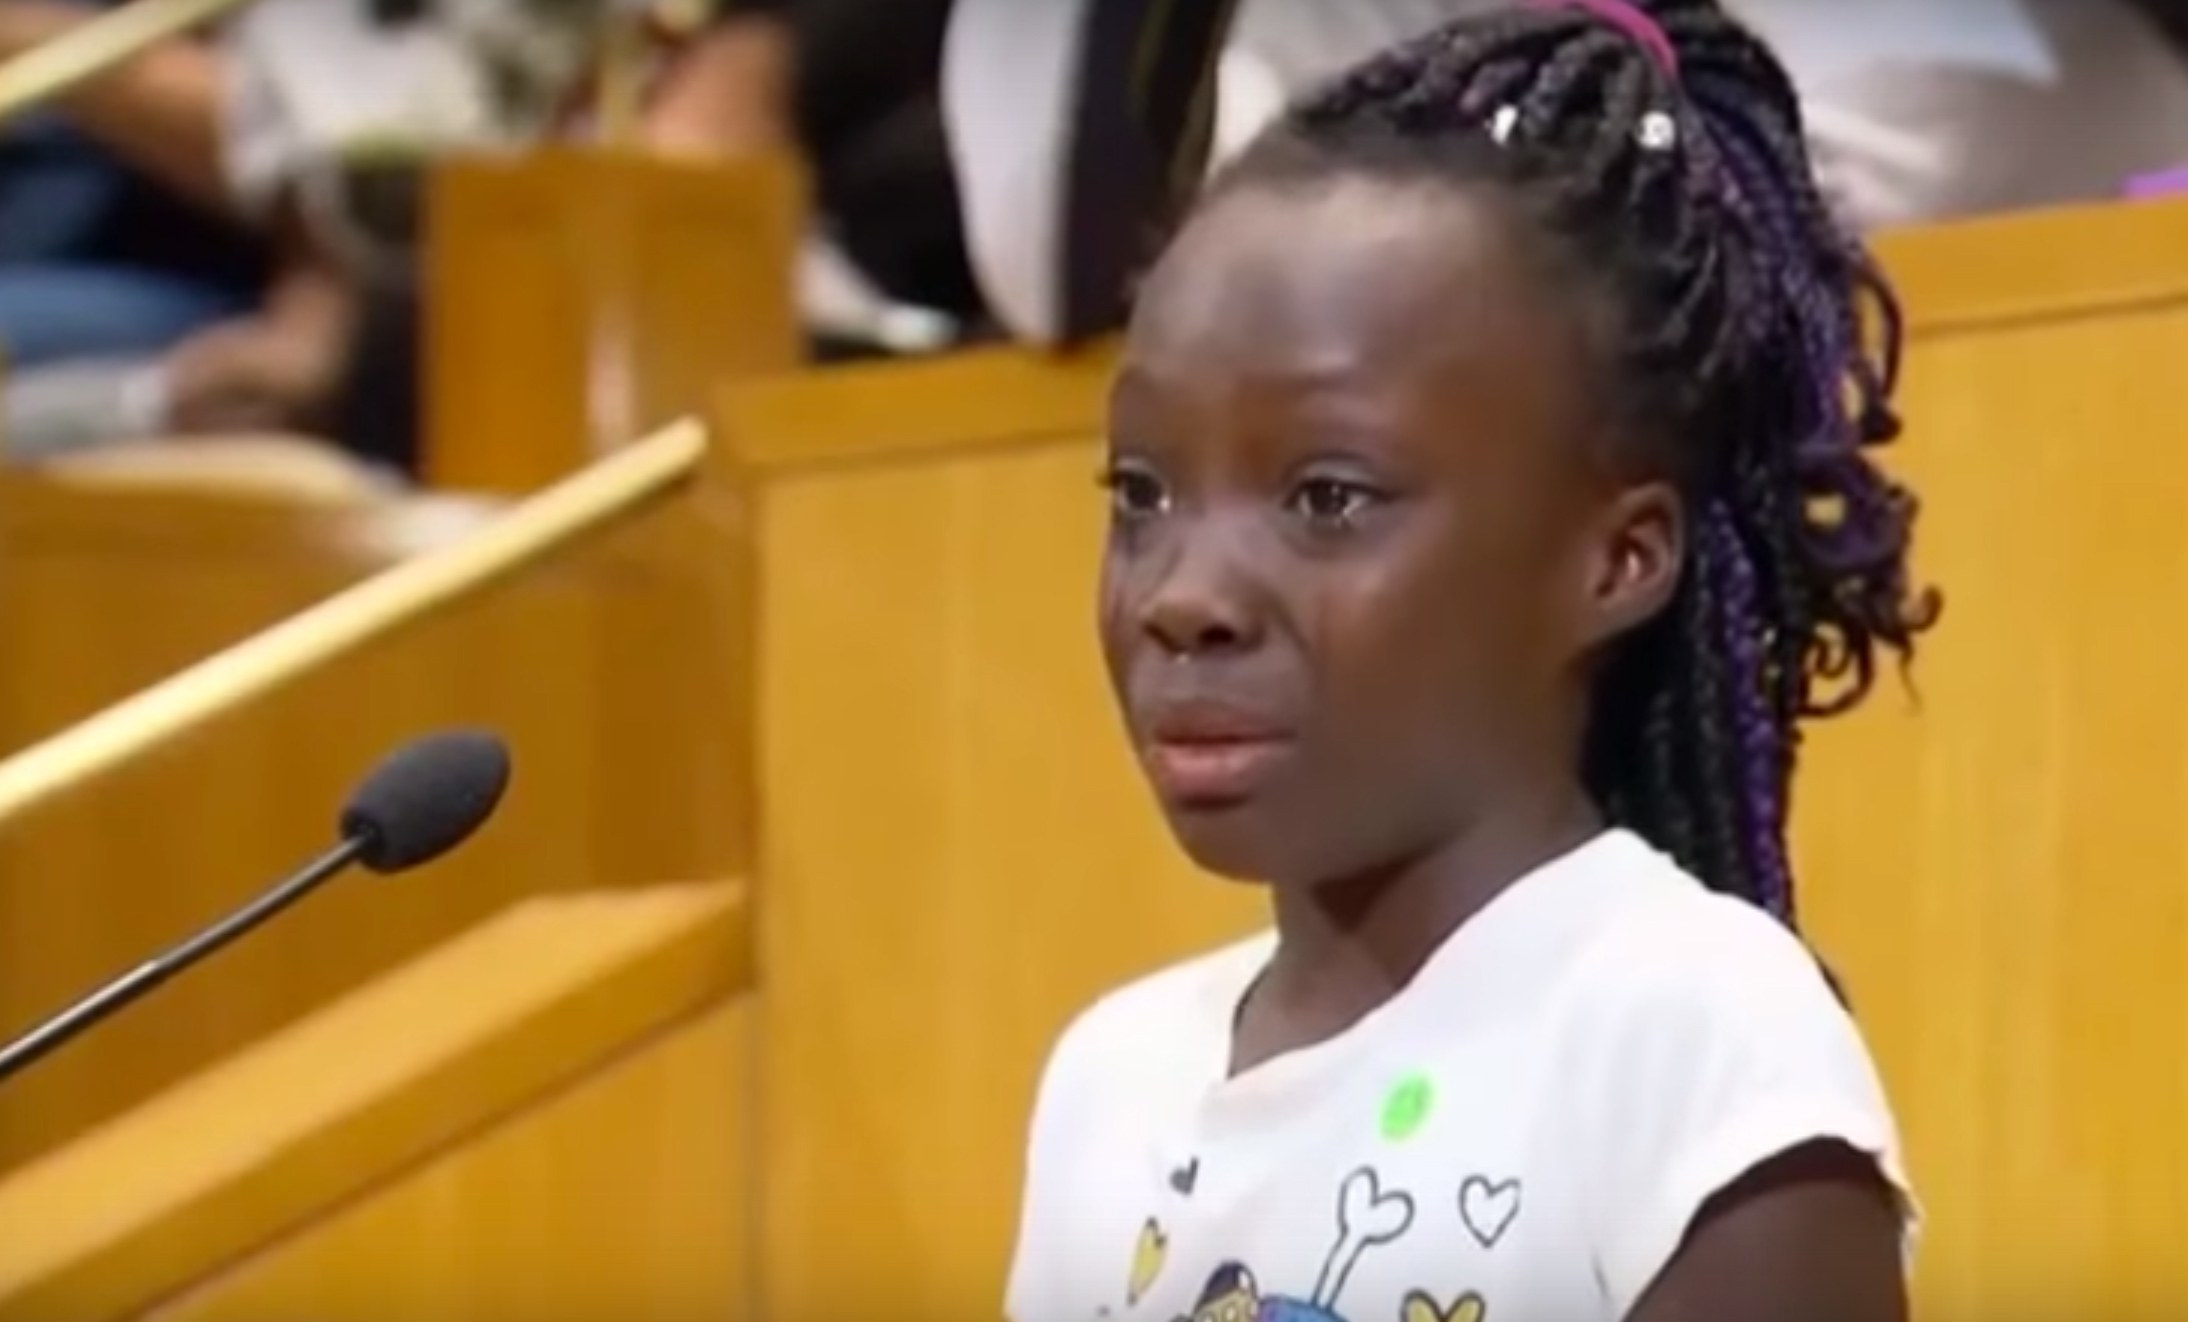  (Video) Pequeña de 9 años se expresa entre lágrimas sobre racismo